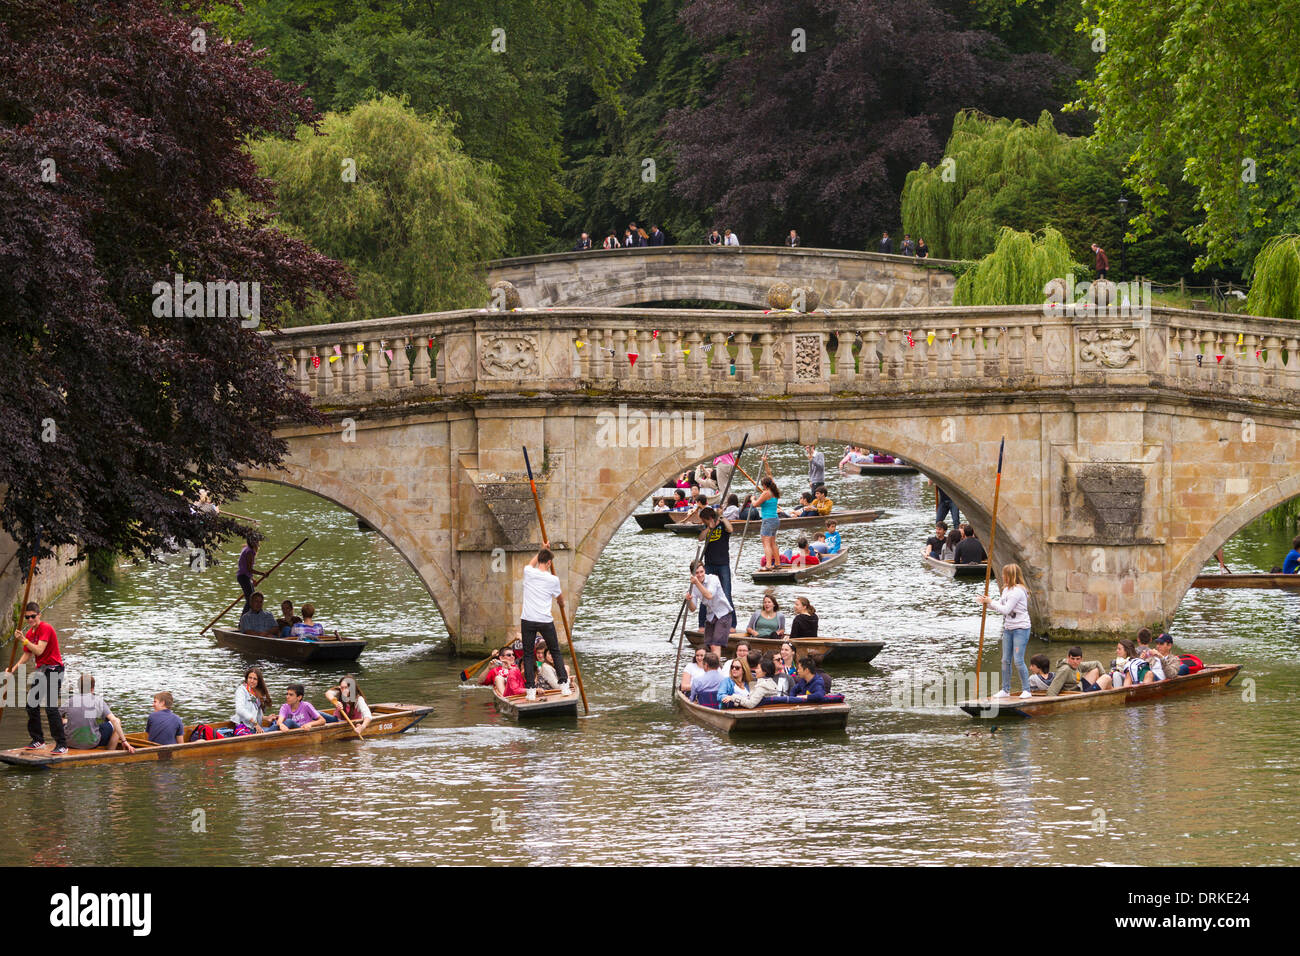 Les gens en barque sur rivière Cam Clare Bridge background, Cambridge, Angleterre Banque D'Images